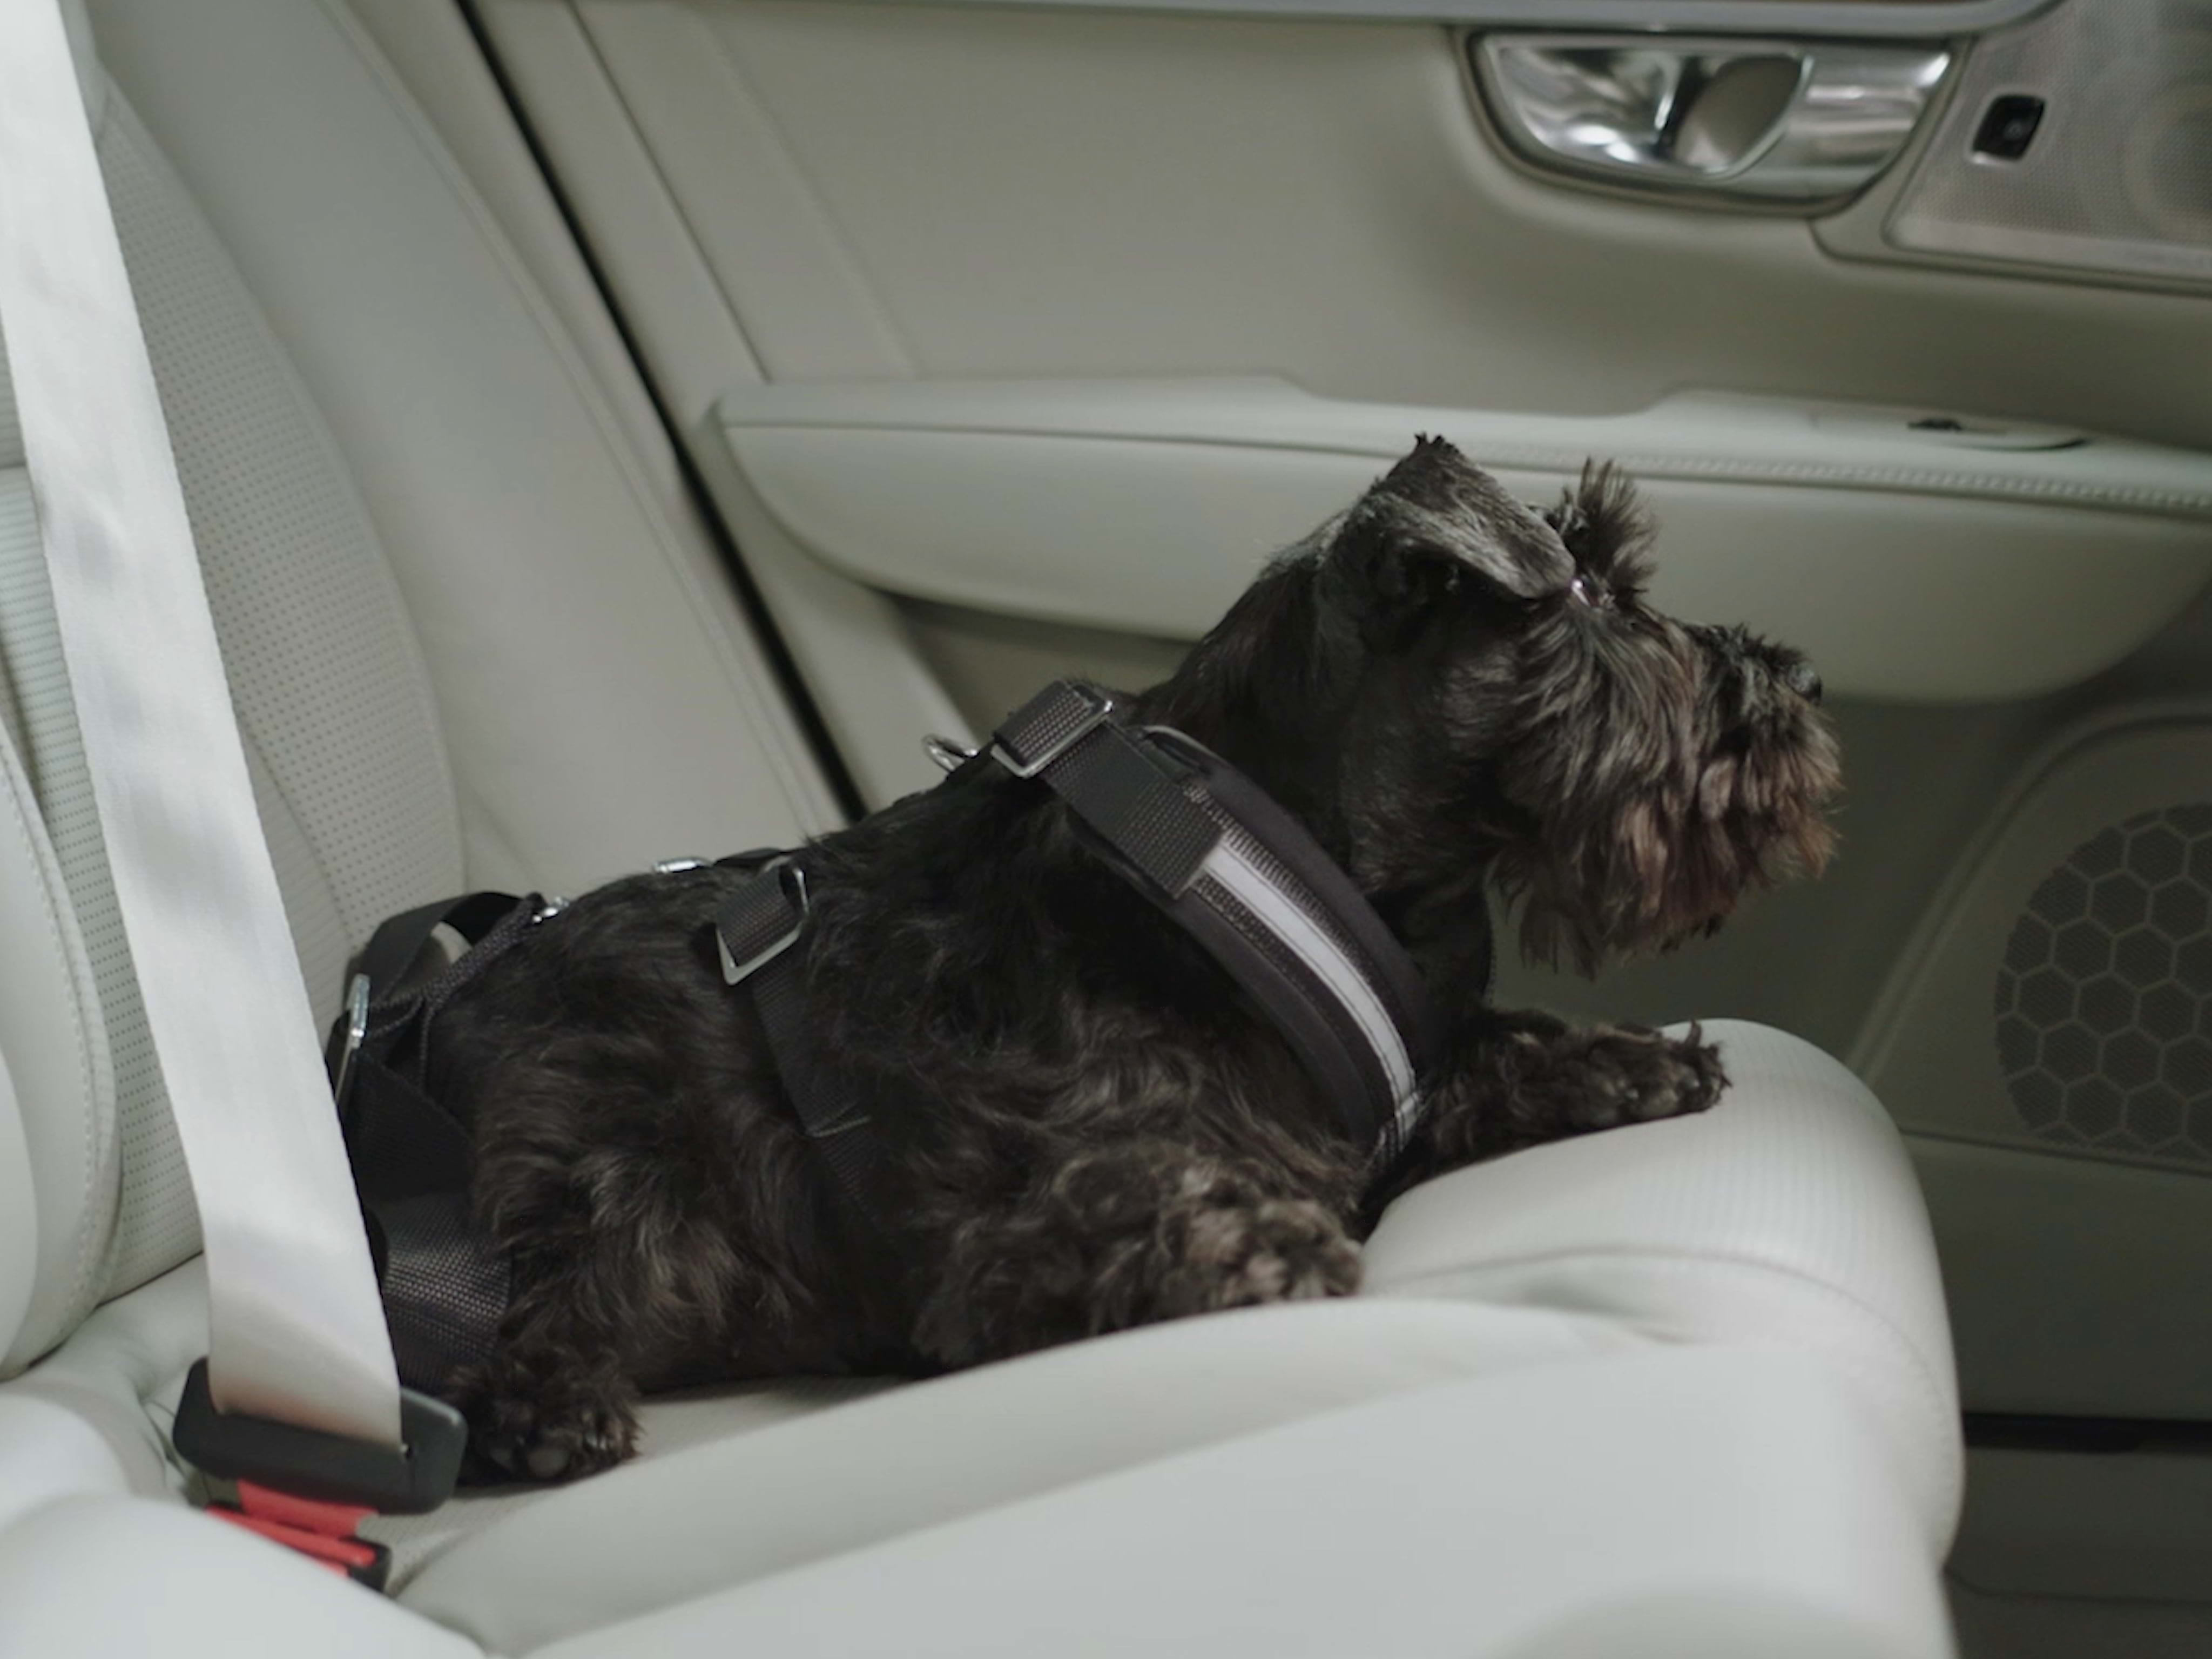 შოტლანდიური ტერიერი მშვიდად ზის ძაღლის სპეციალურ აღკაზმულობაში, რომელიც ხელმისაწვდომია Volvo Cars-ის ოფიციალური აქსესუარის სახით.